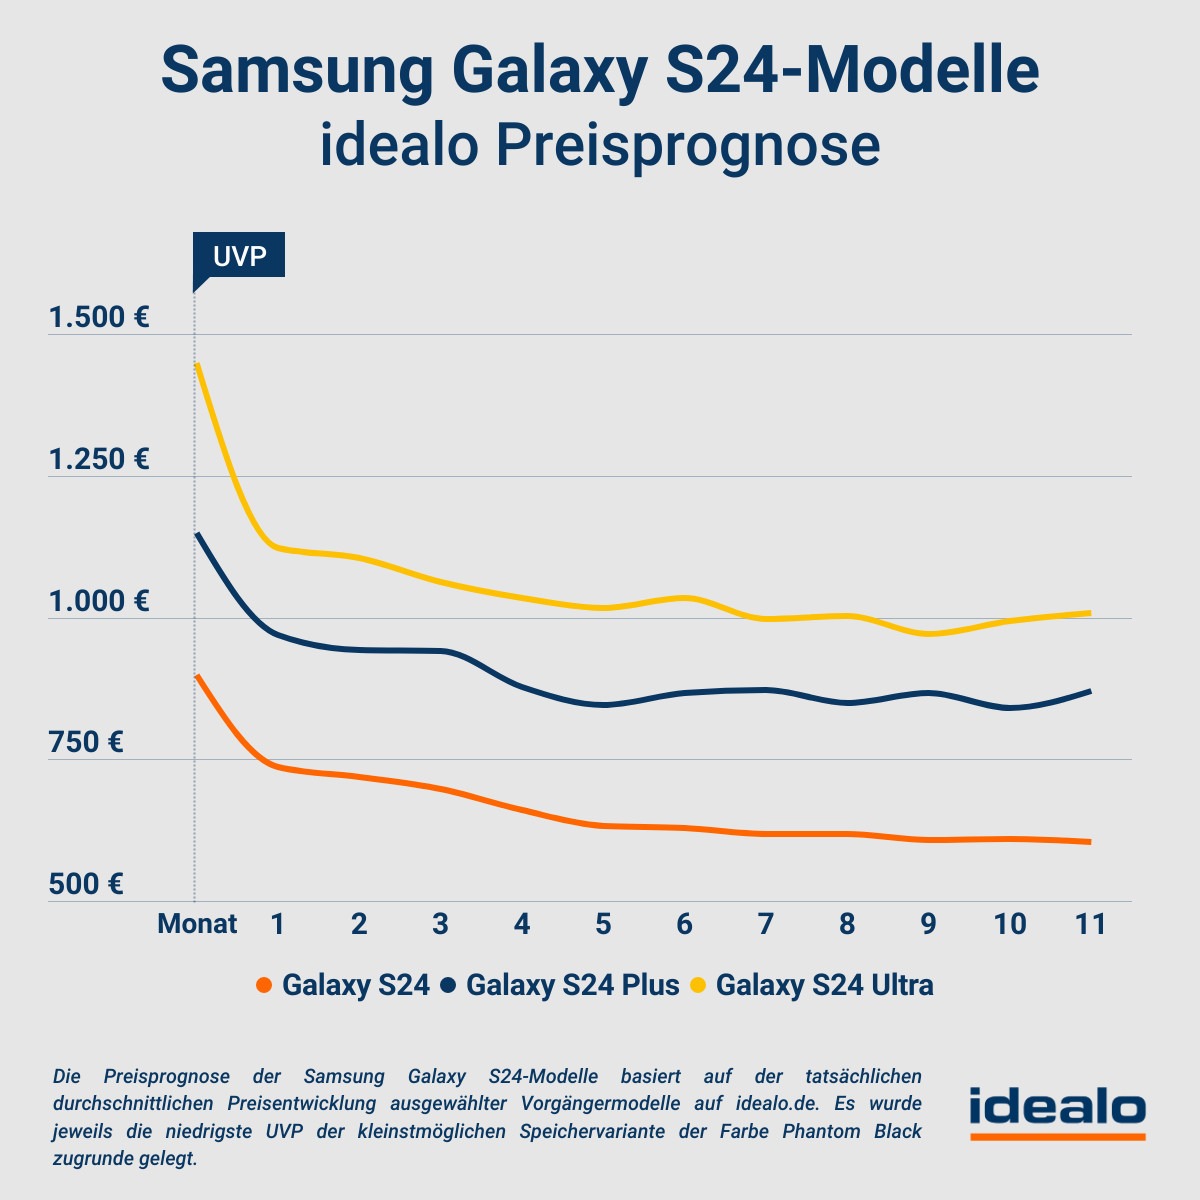 Samsung Galaxy S24-Preisprognose: Nach einem Monat könnte